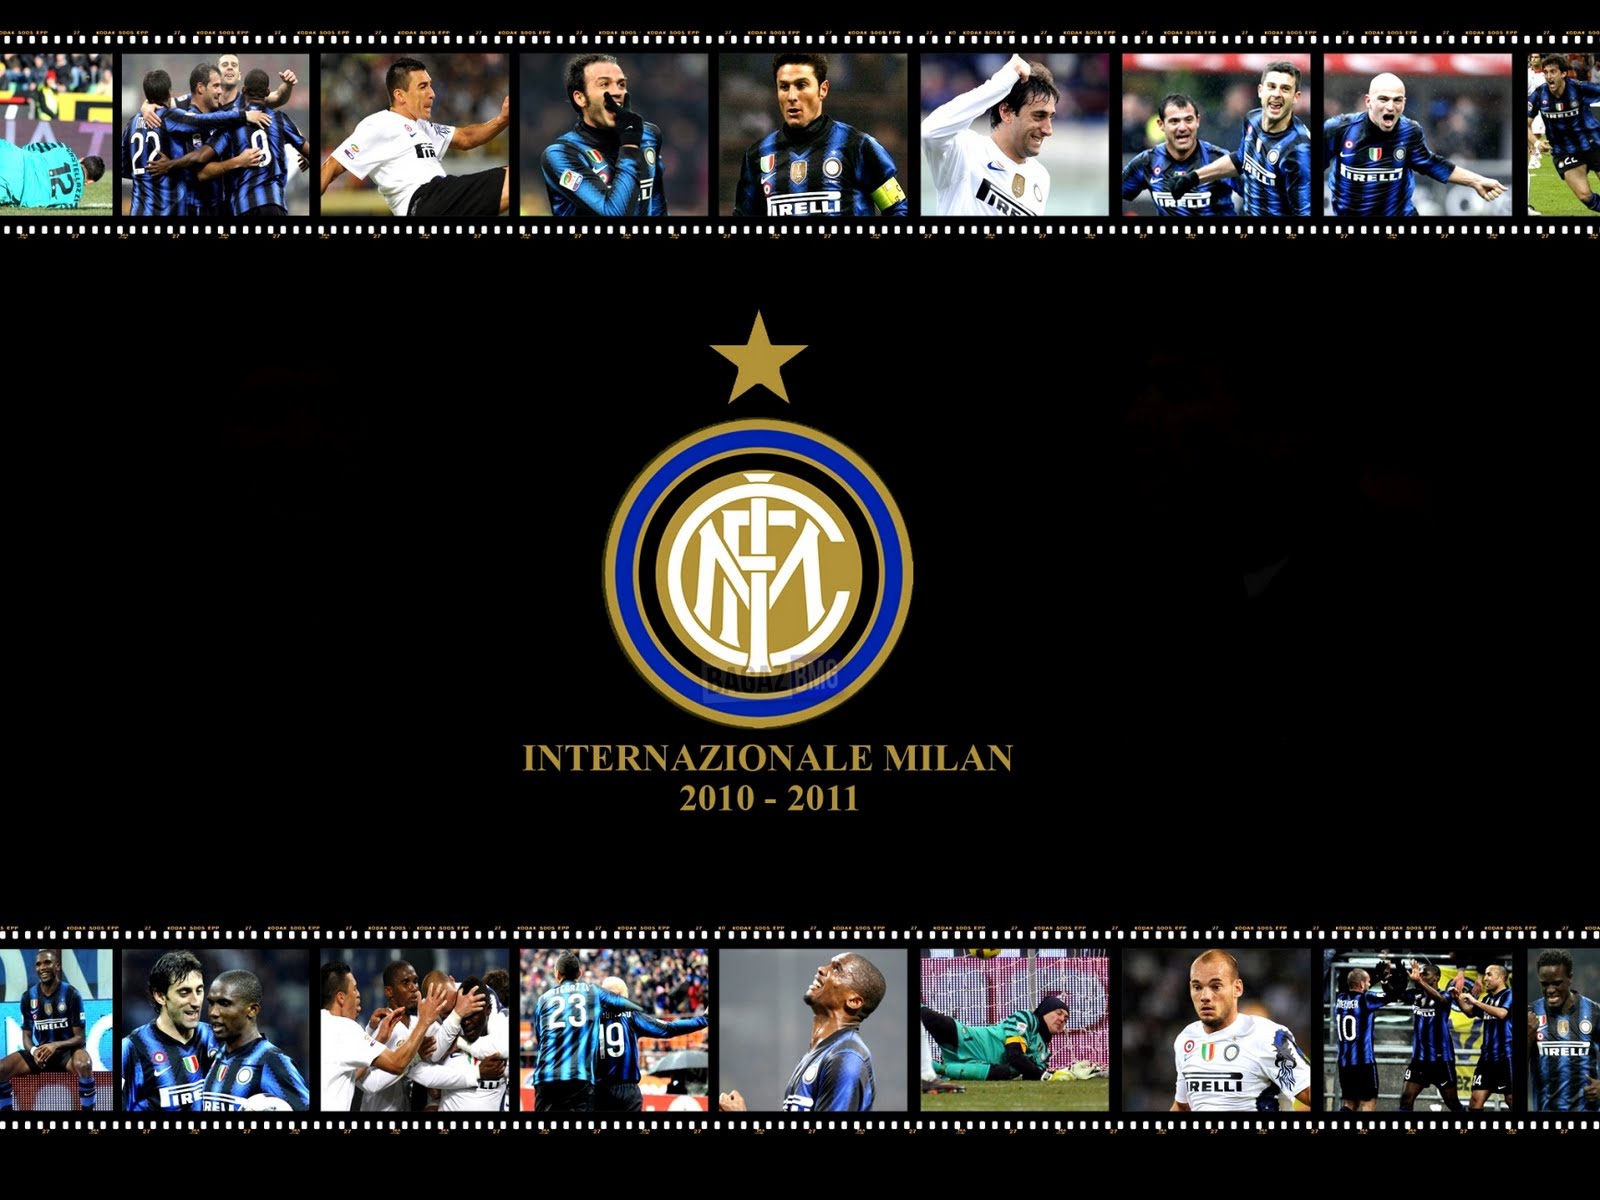 Inter+Milan+Wallpaper+2011+2